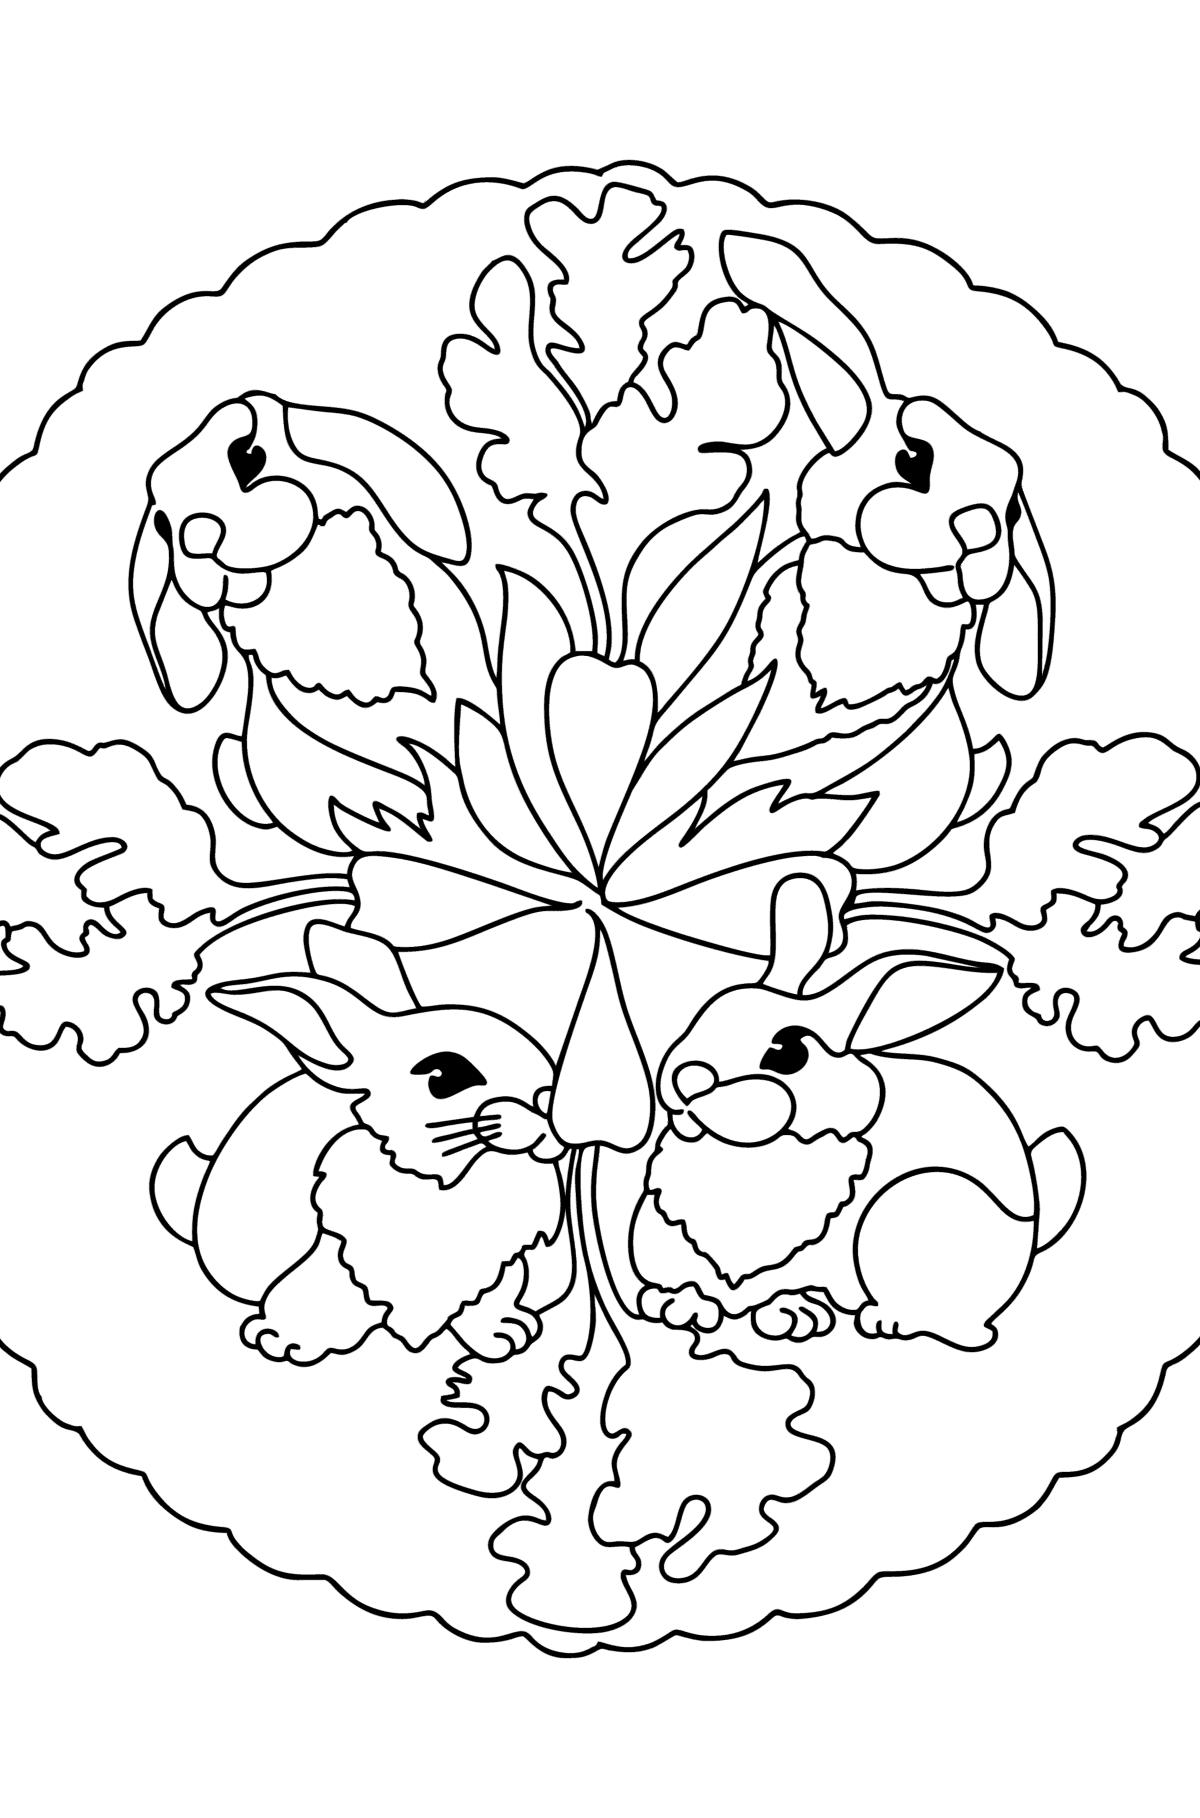 Раскраска мандала с Зайчатами - Картинки для Детей